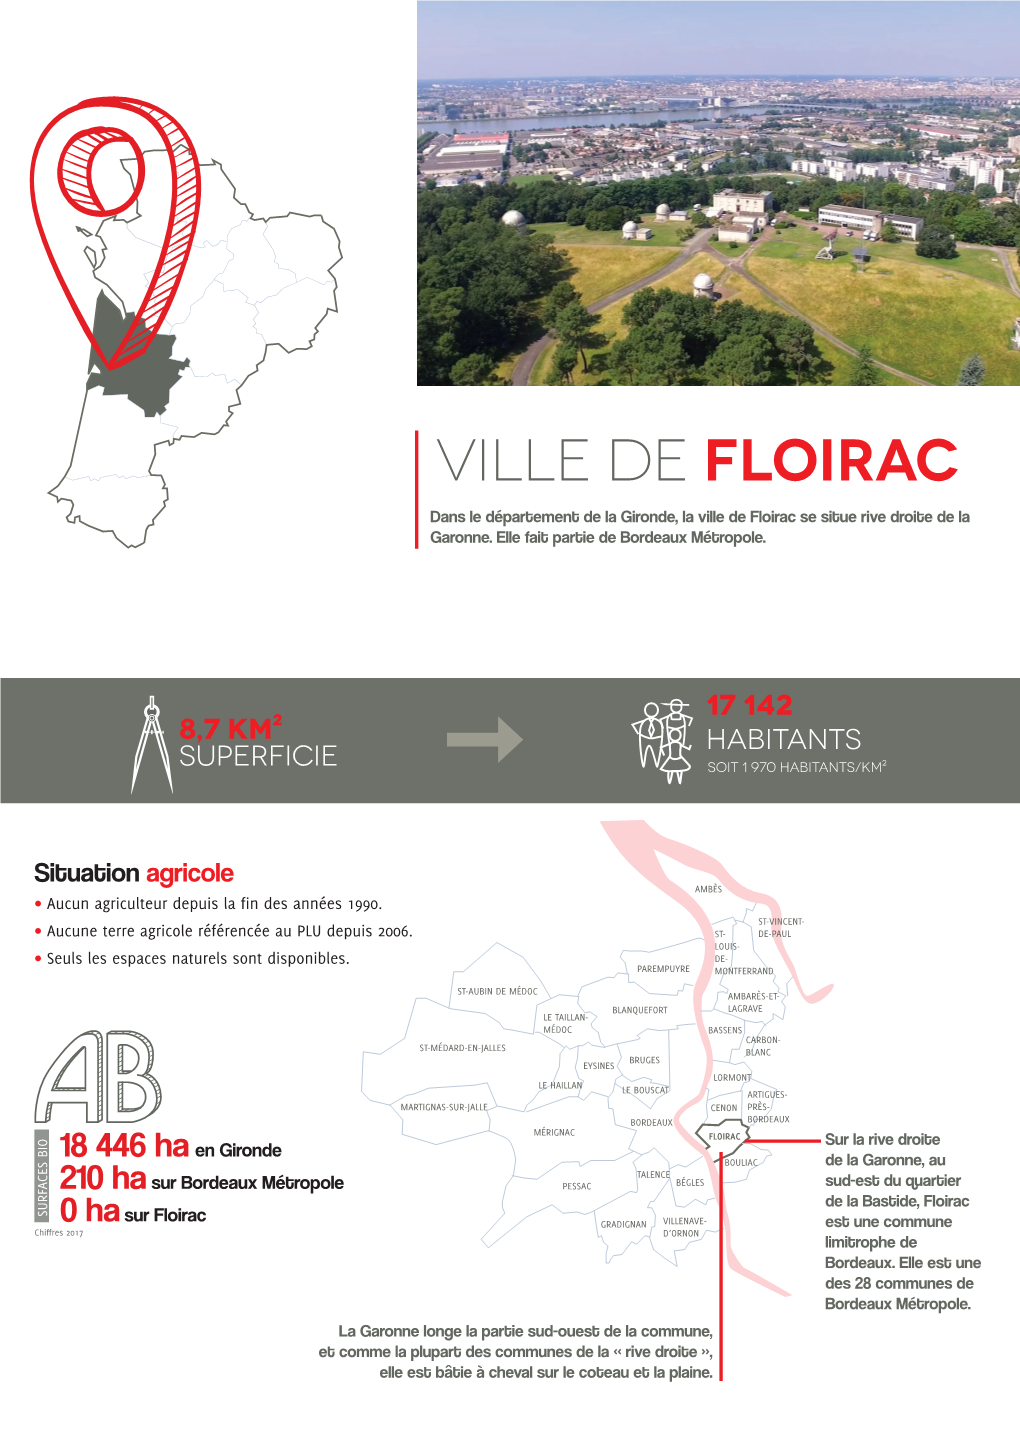 Floirac Dans Le Département De La Gironde, La Ville De Floirac Se Situe Rive Droite De La E Garonne